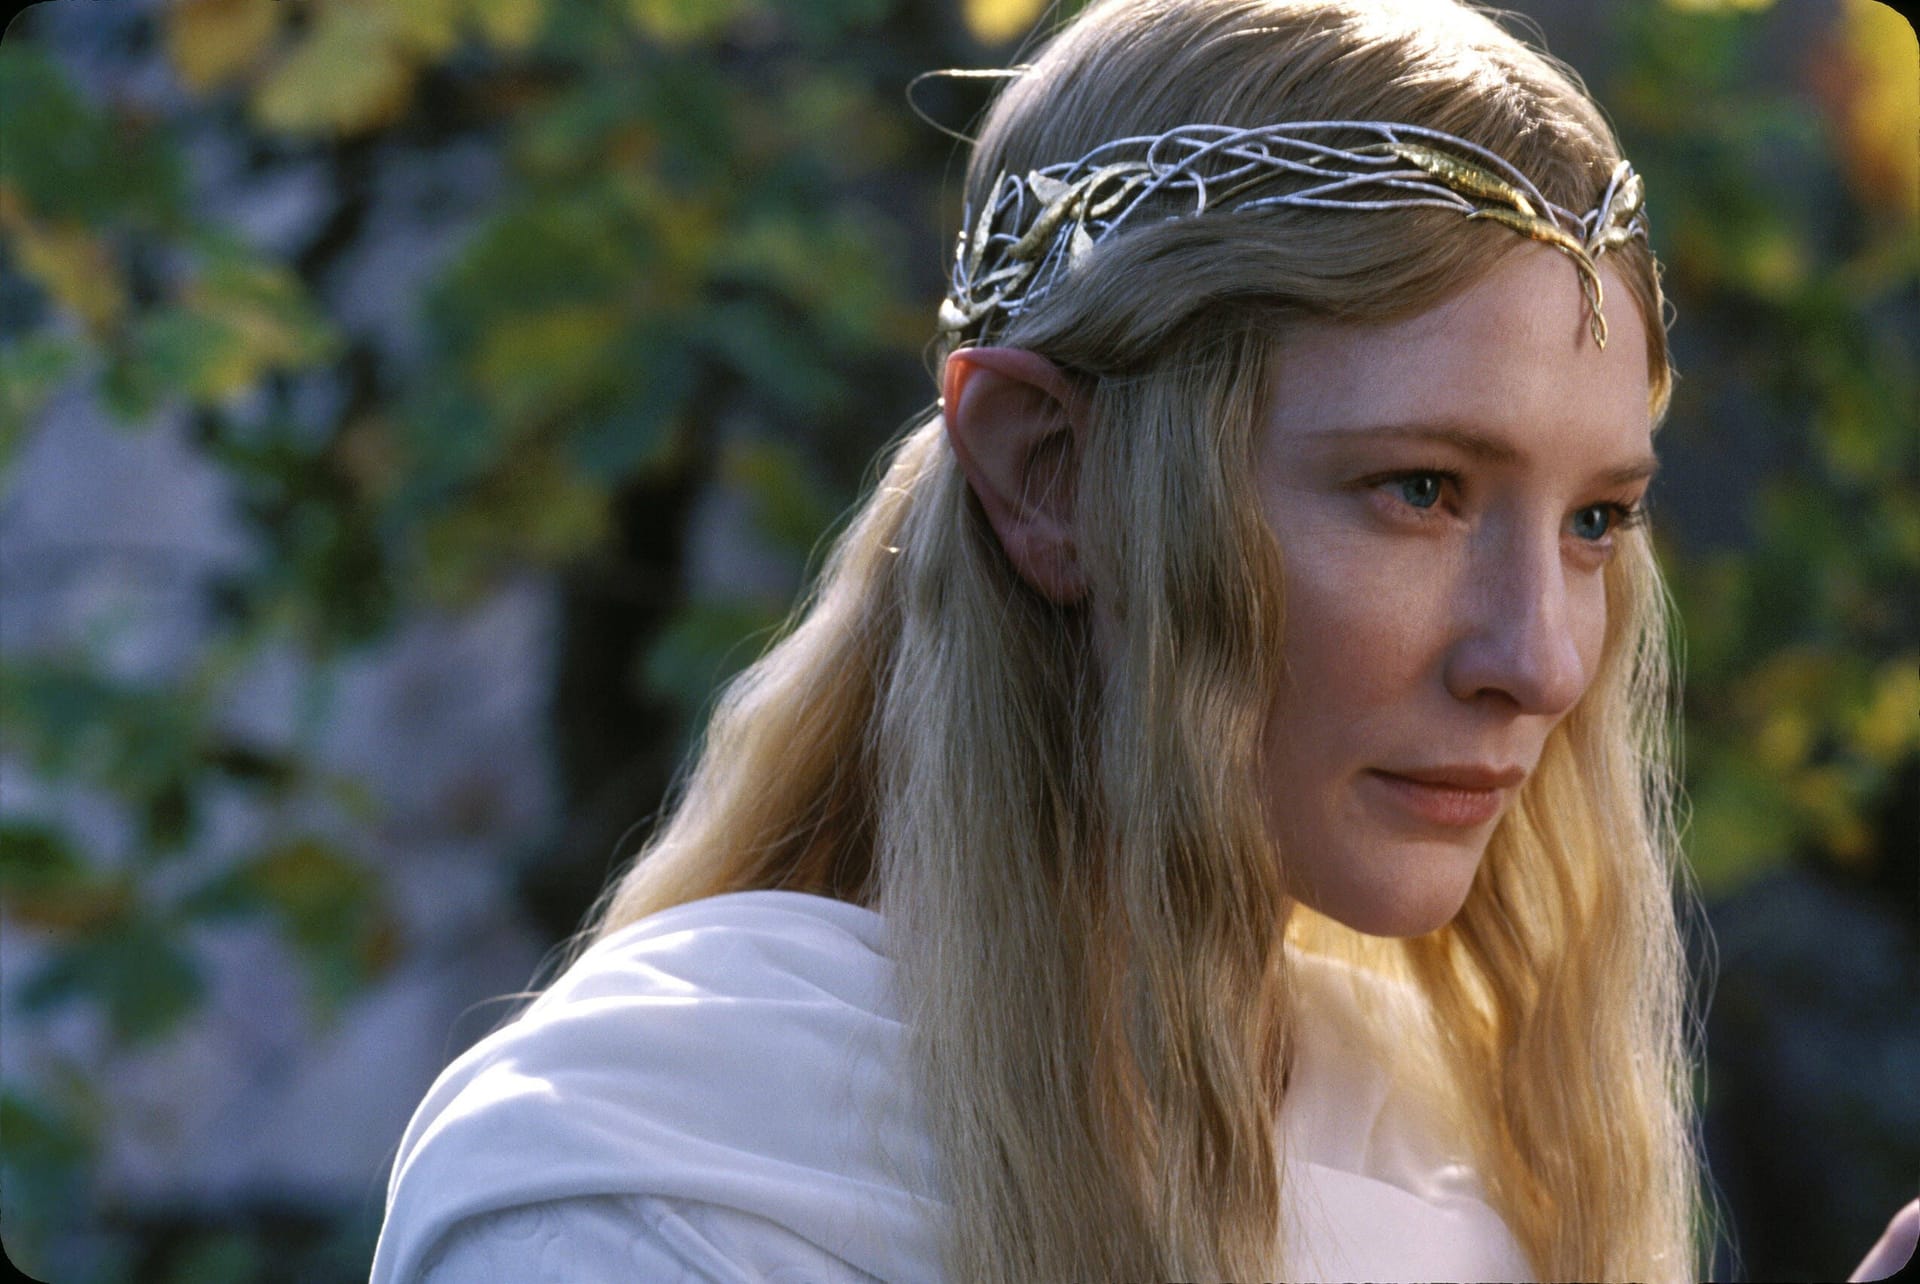 Cate Blanchett in "Der Herr der Ringe: Die Gefährten" als Galadriel